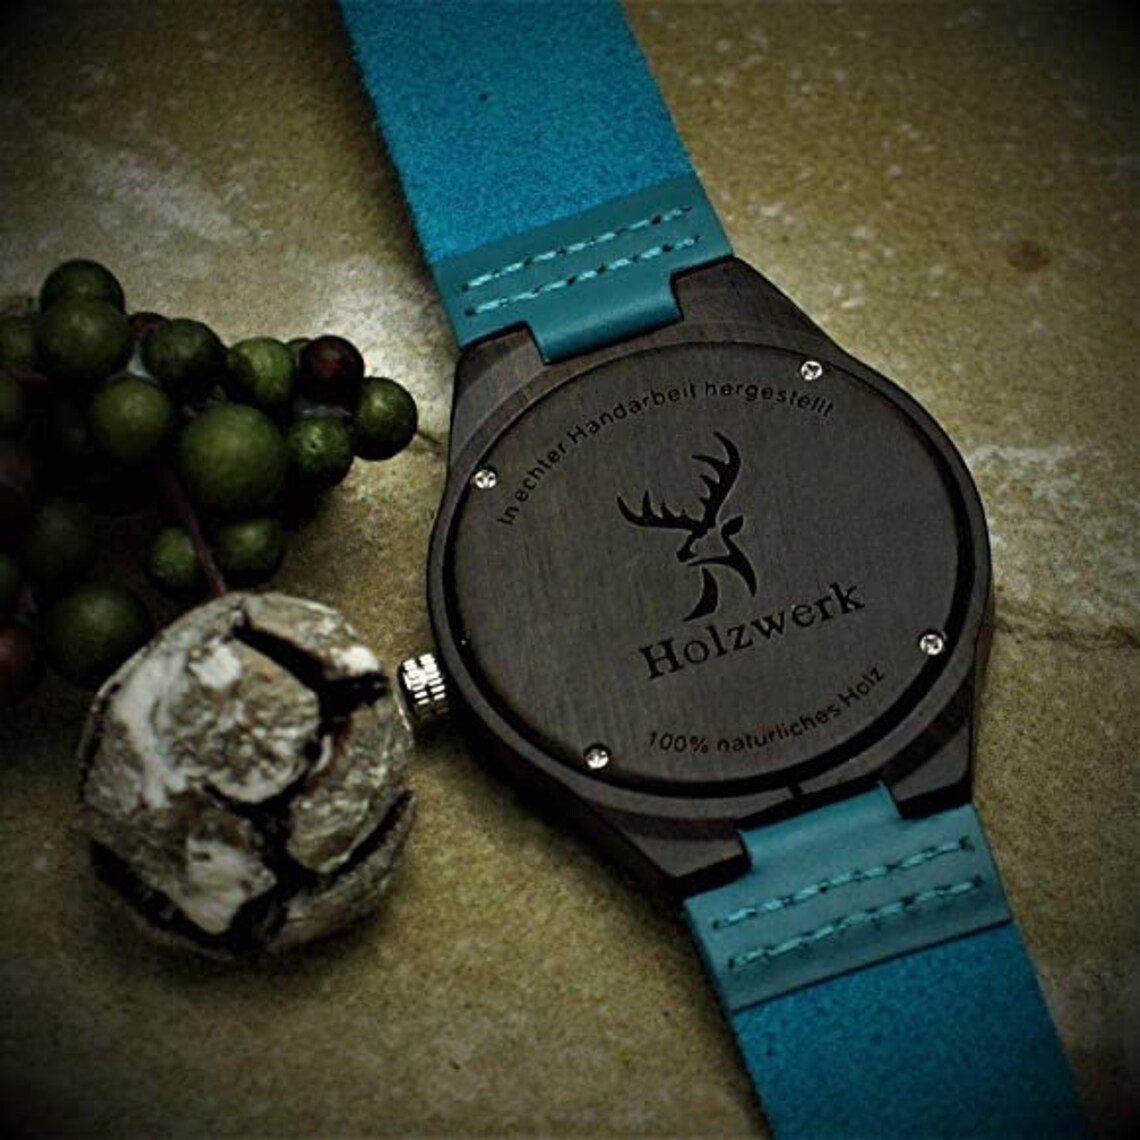 Holzwerk Quarzuhr FALKENSEE & Leder Uhr, Holz blau & schwarz kleine Damen türkis Armband